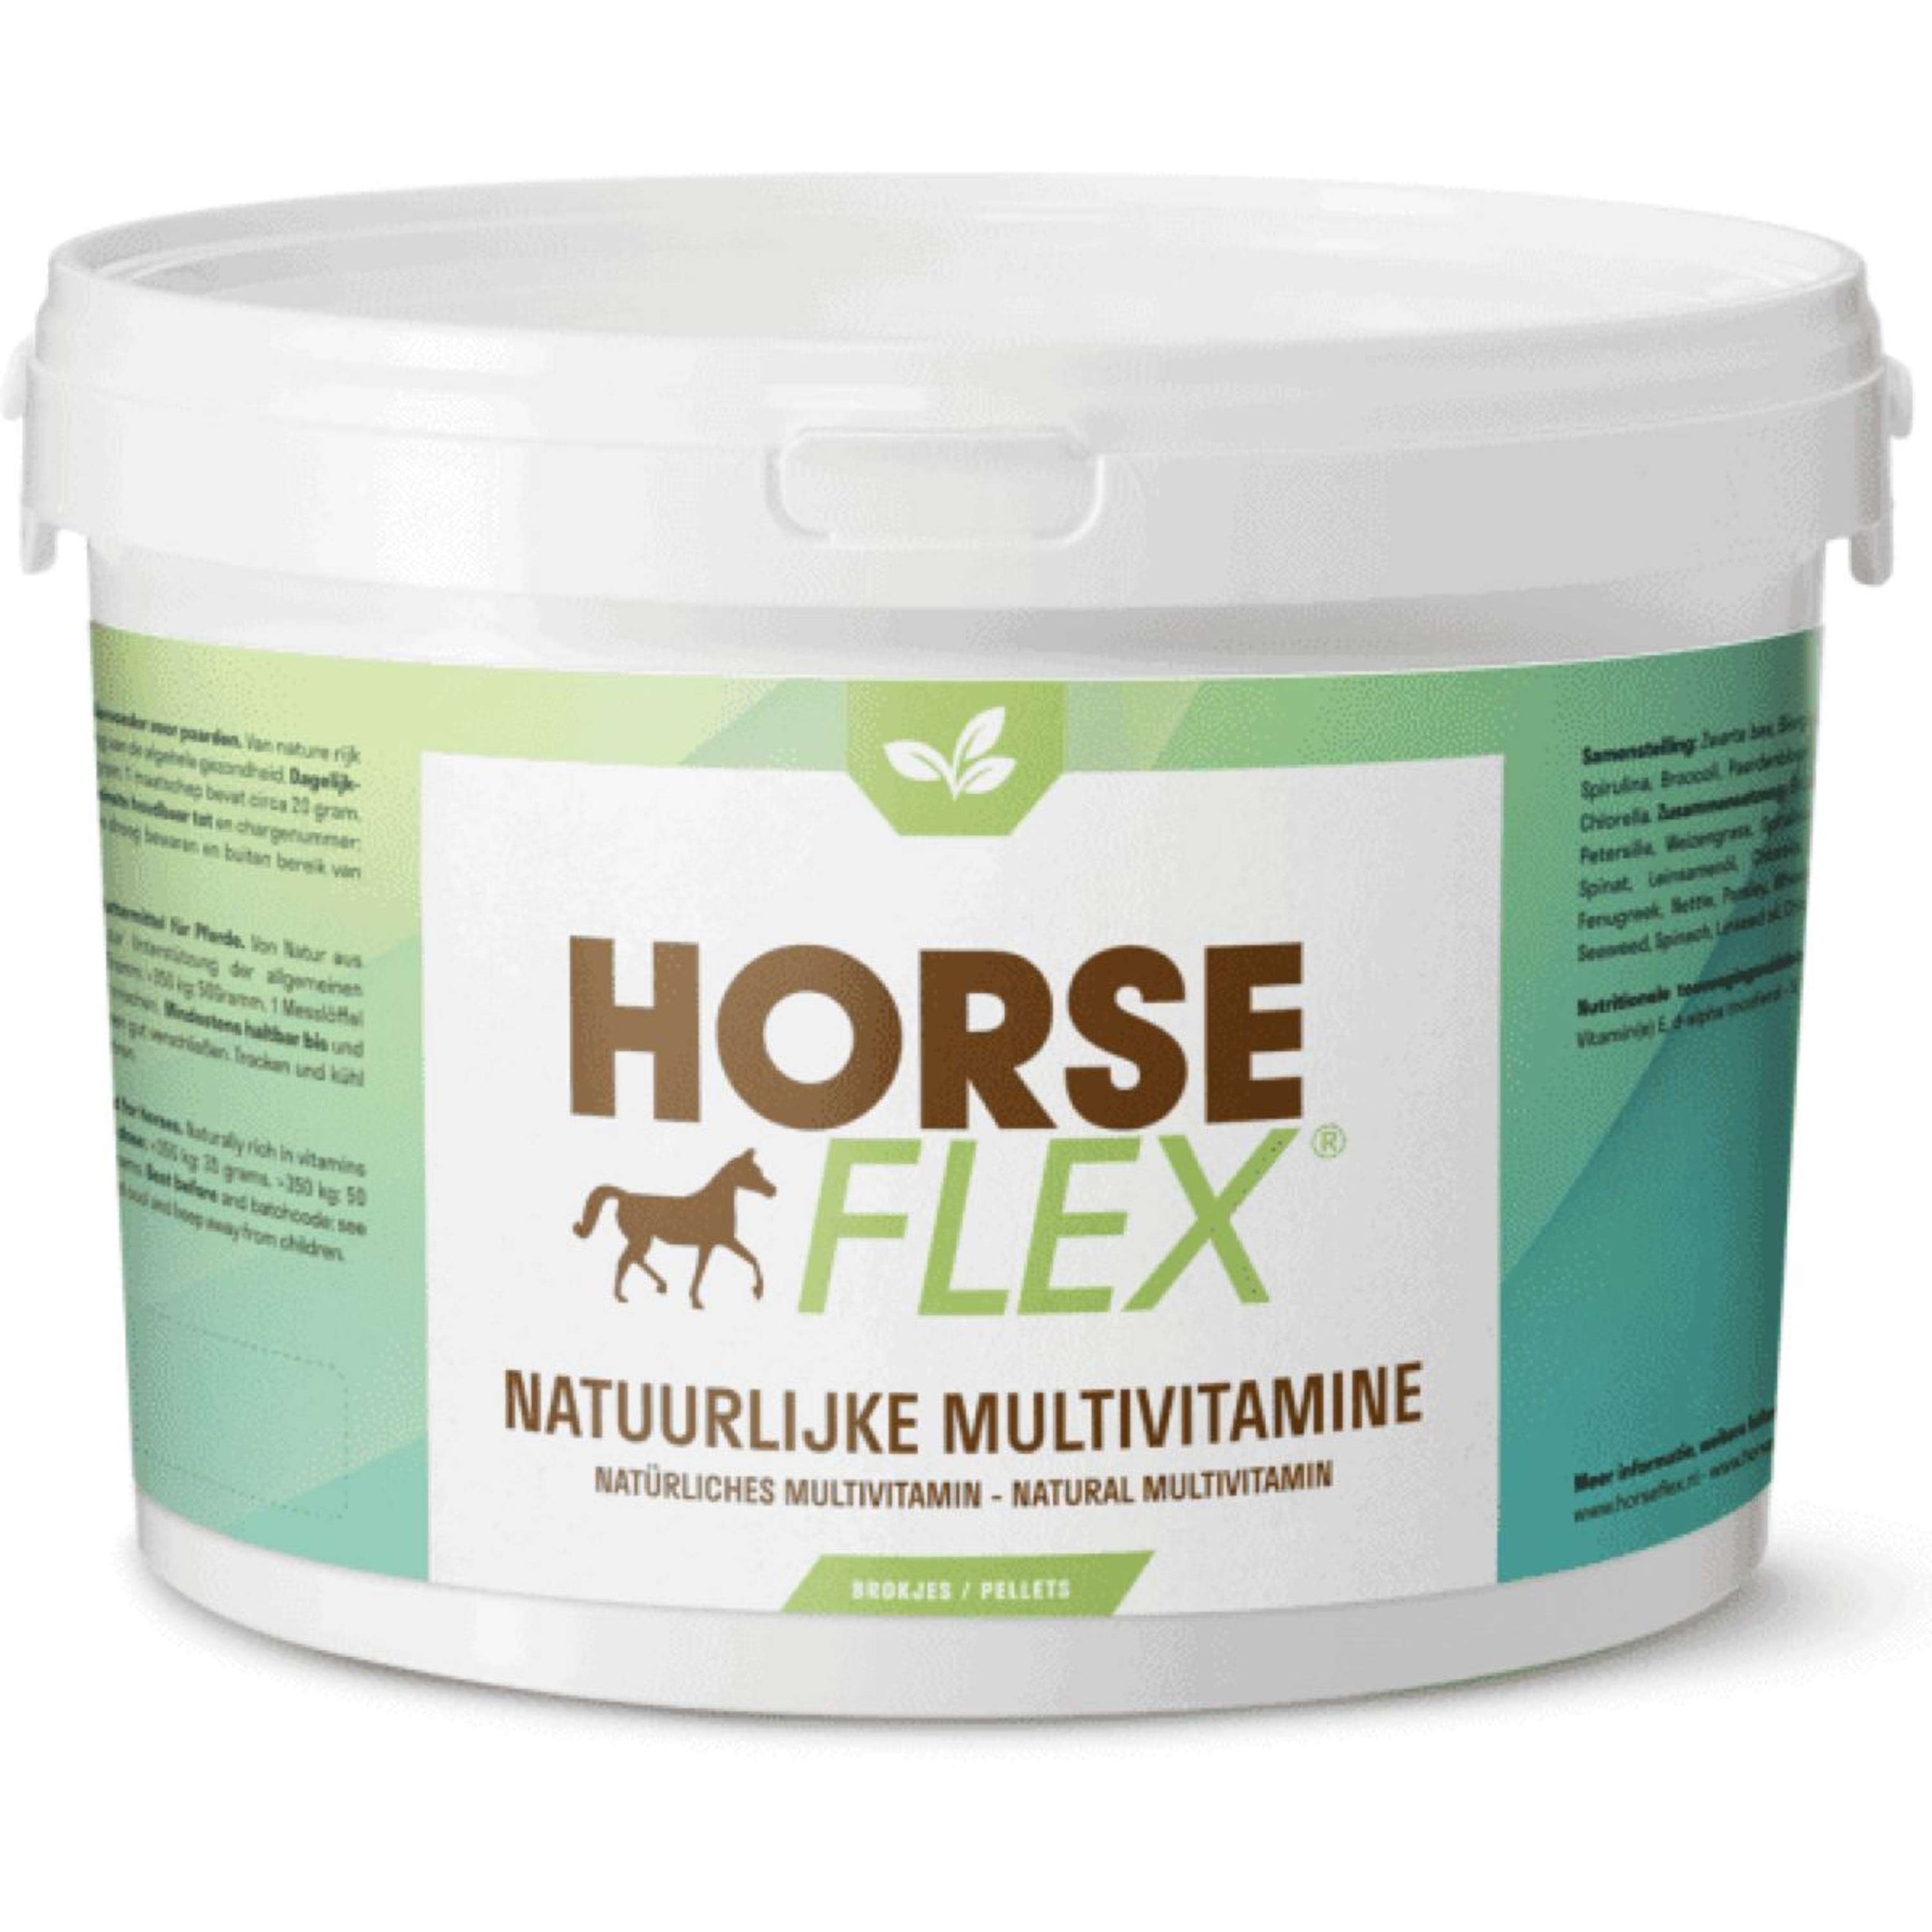 Horseflex Multivitamine Naturelle